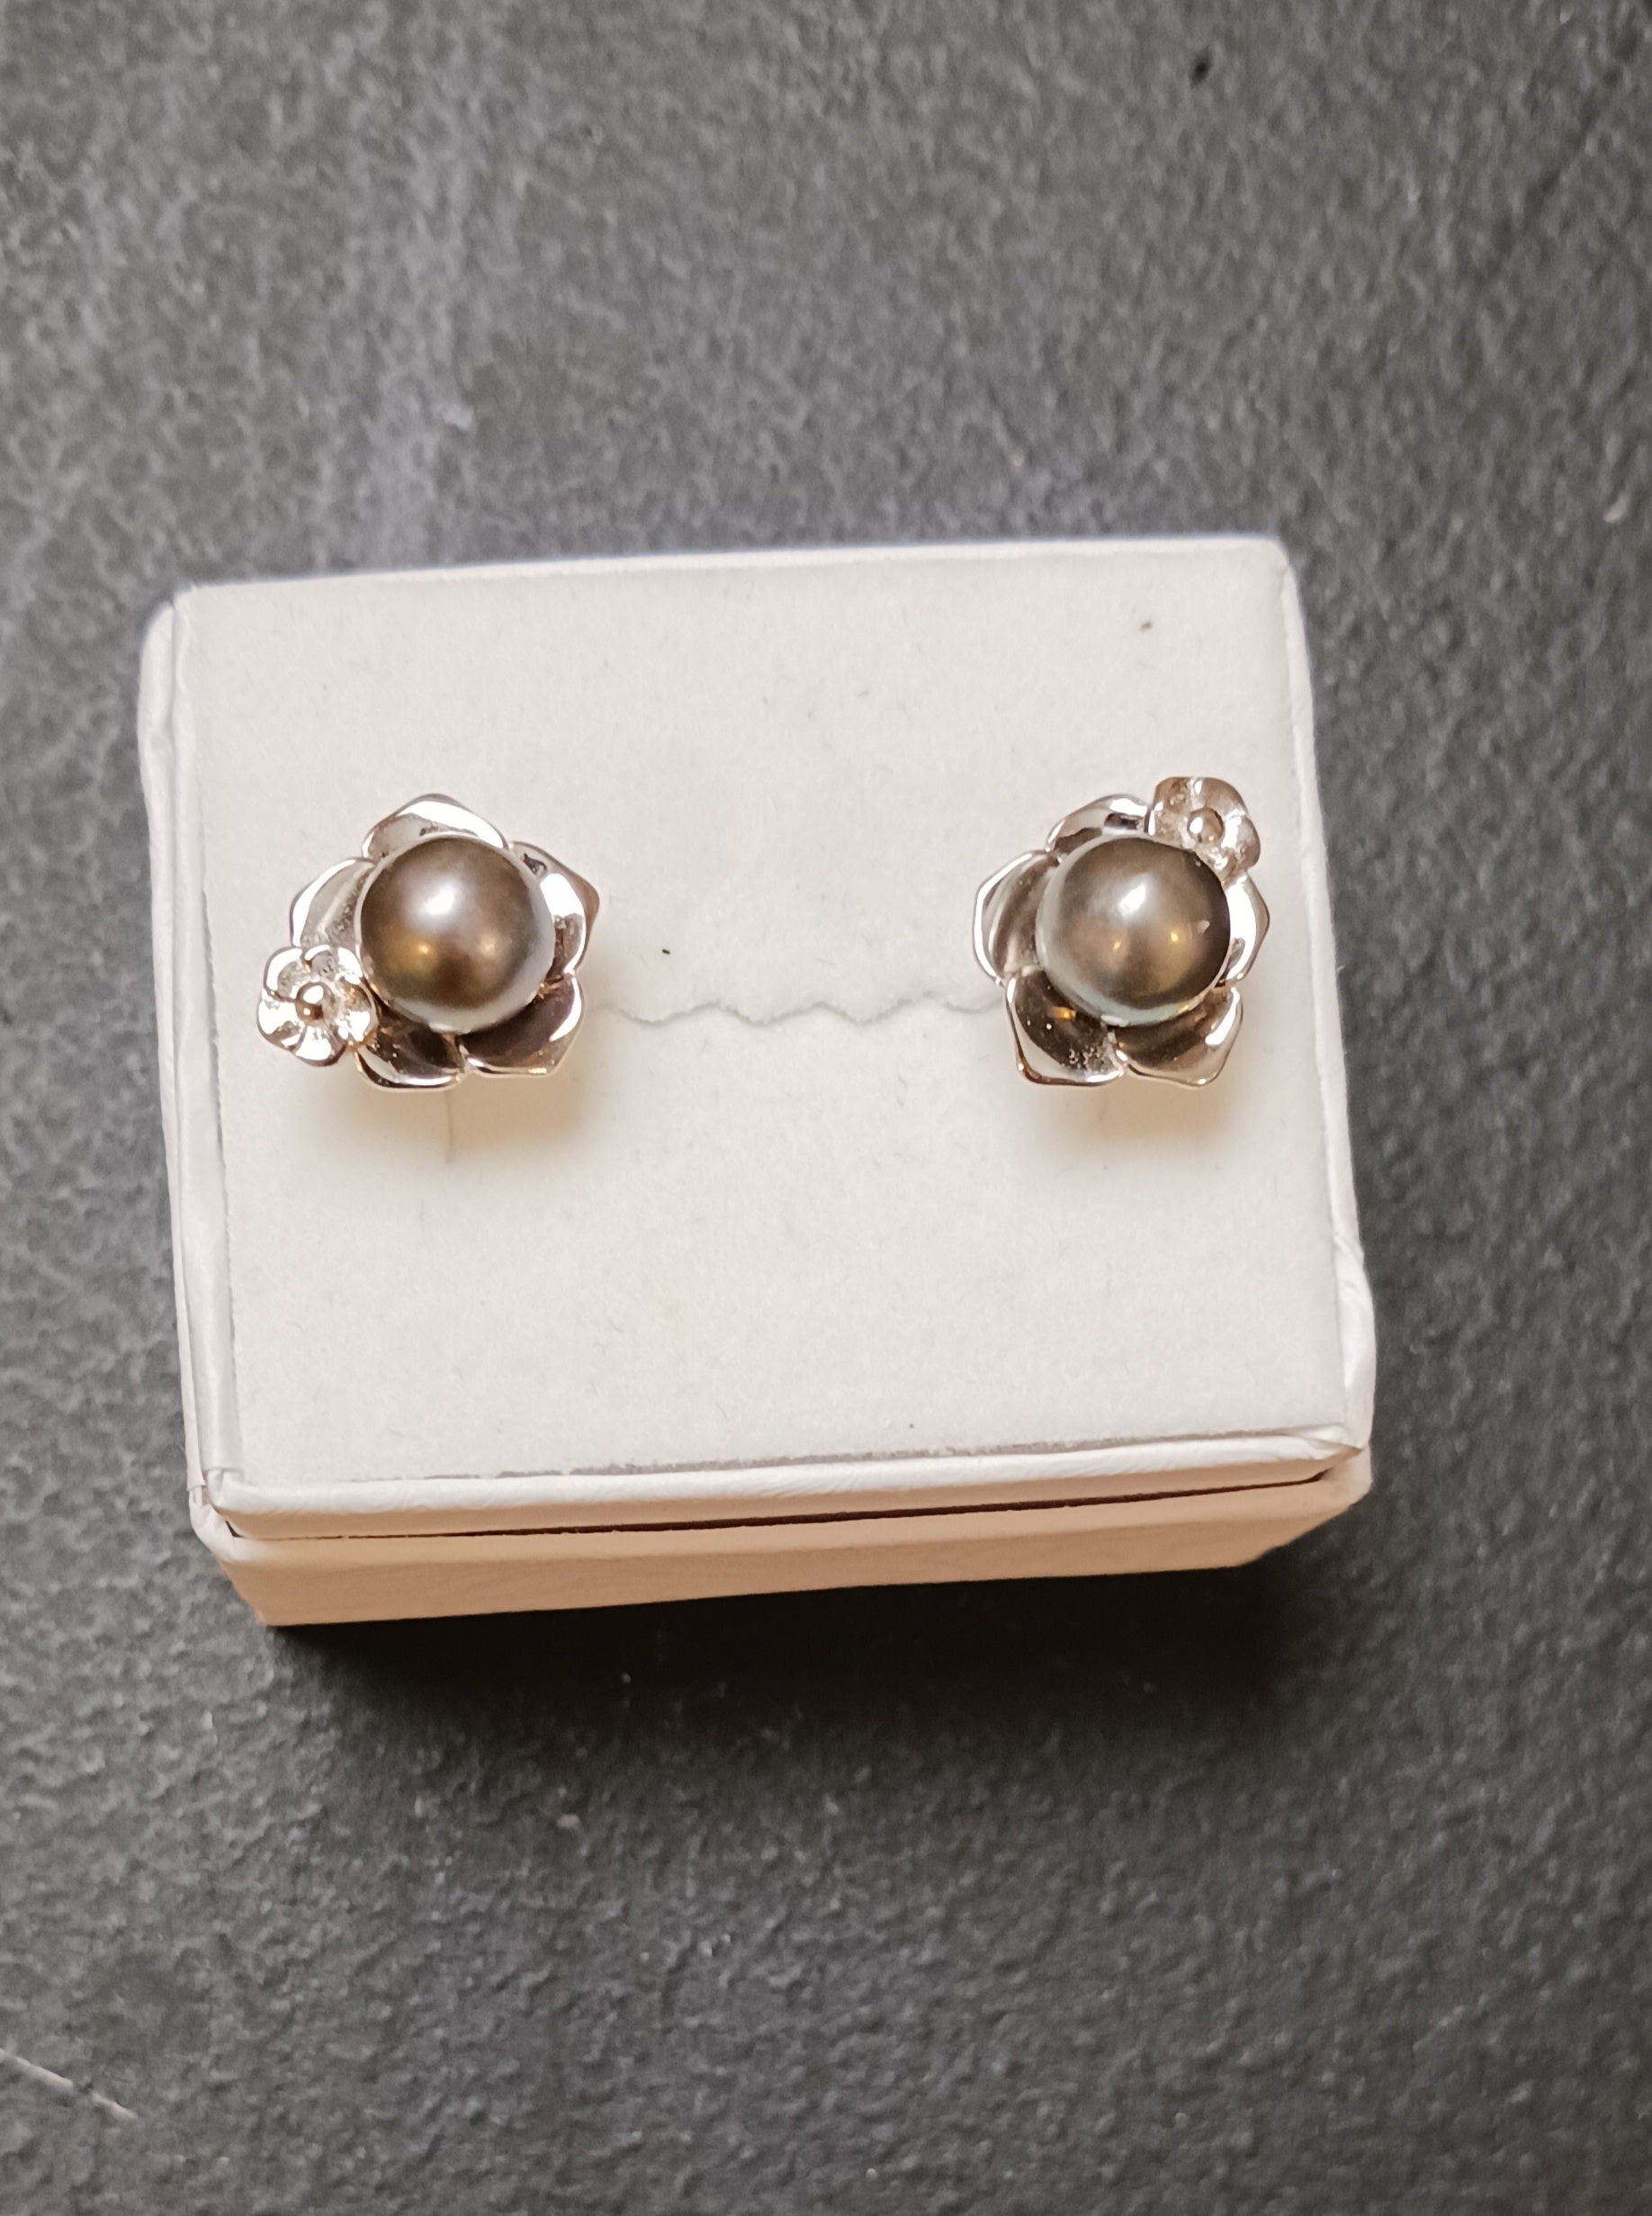 Double flower earrings